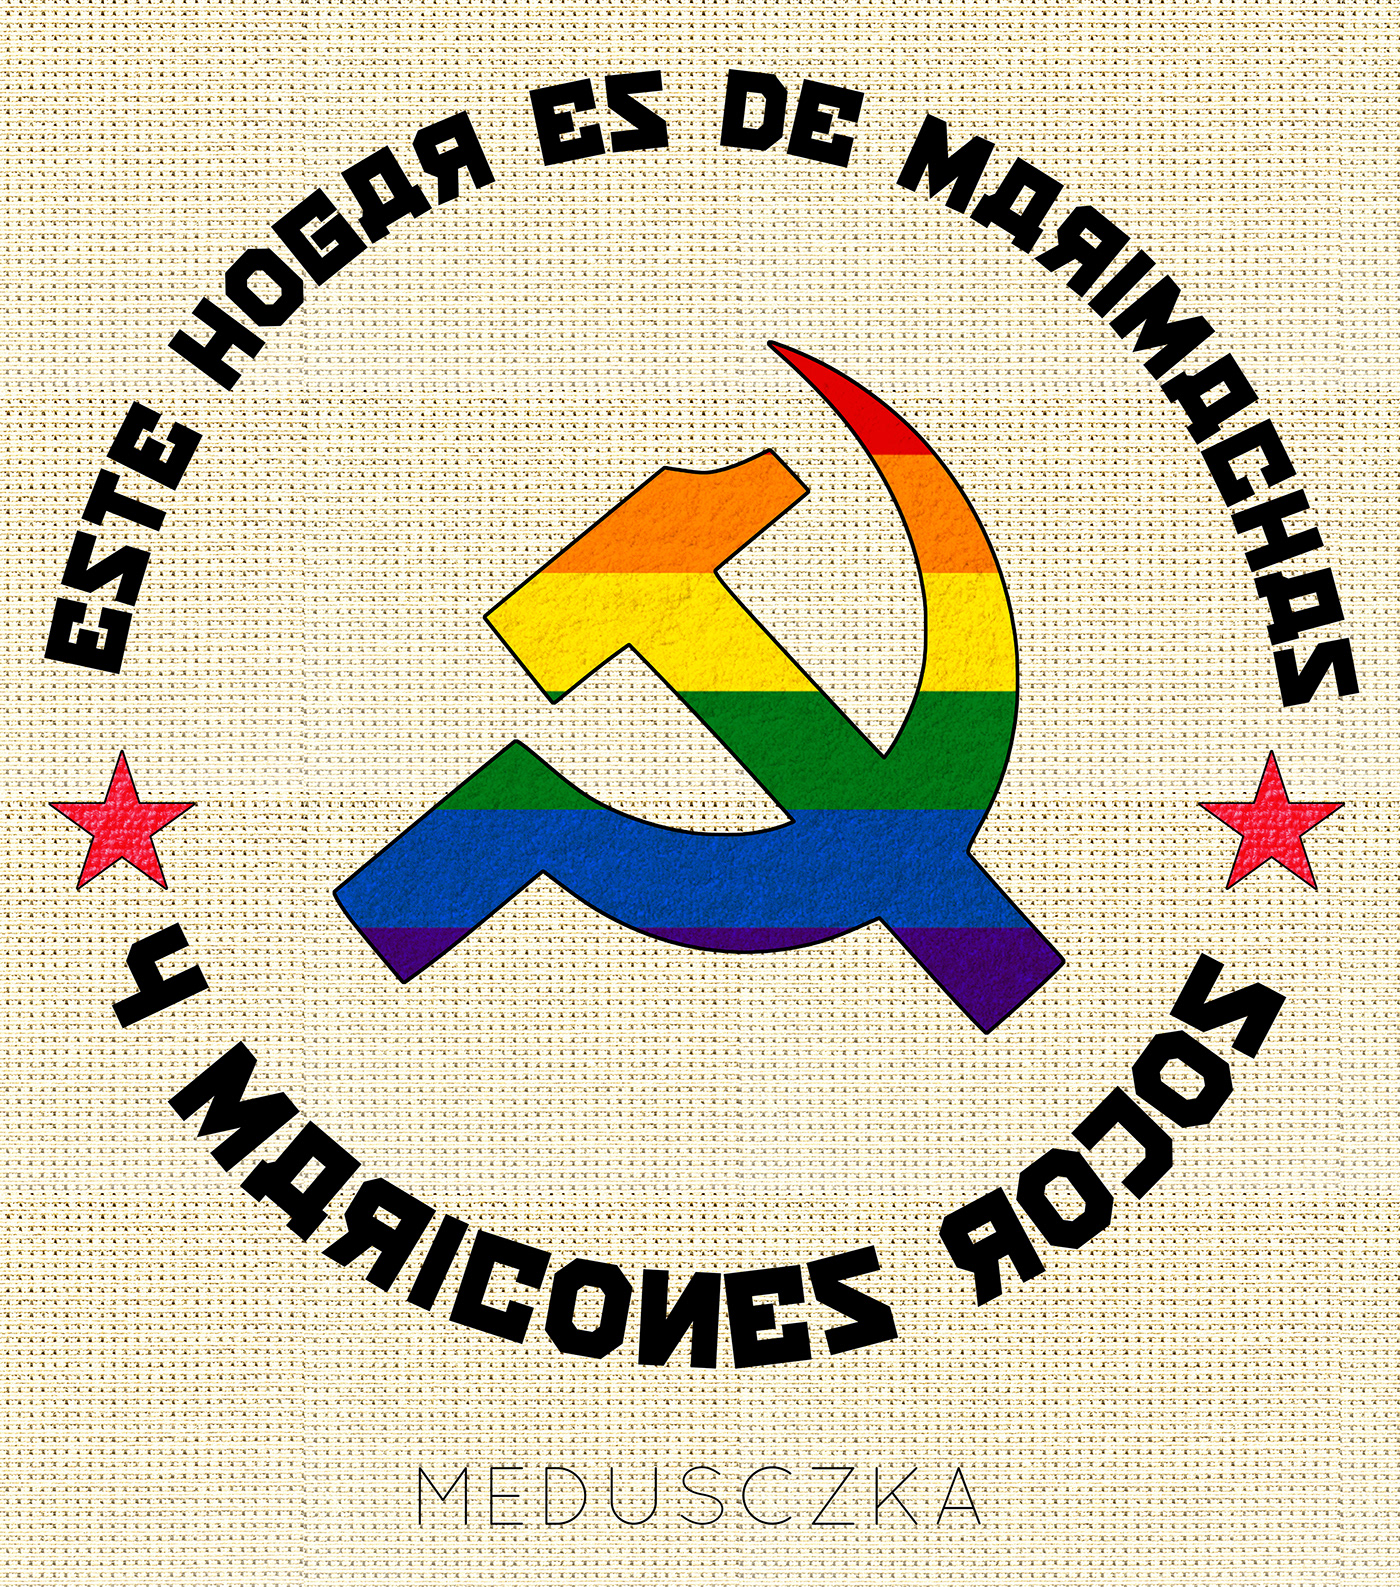 communism comunismo gay ILLUSTRATION  ilustracion LGBT Medusczka queer queer art socialismo